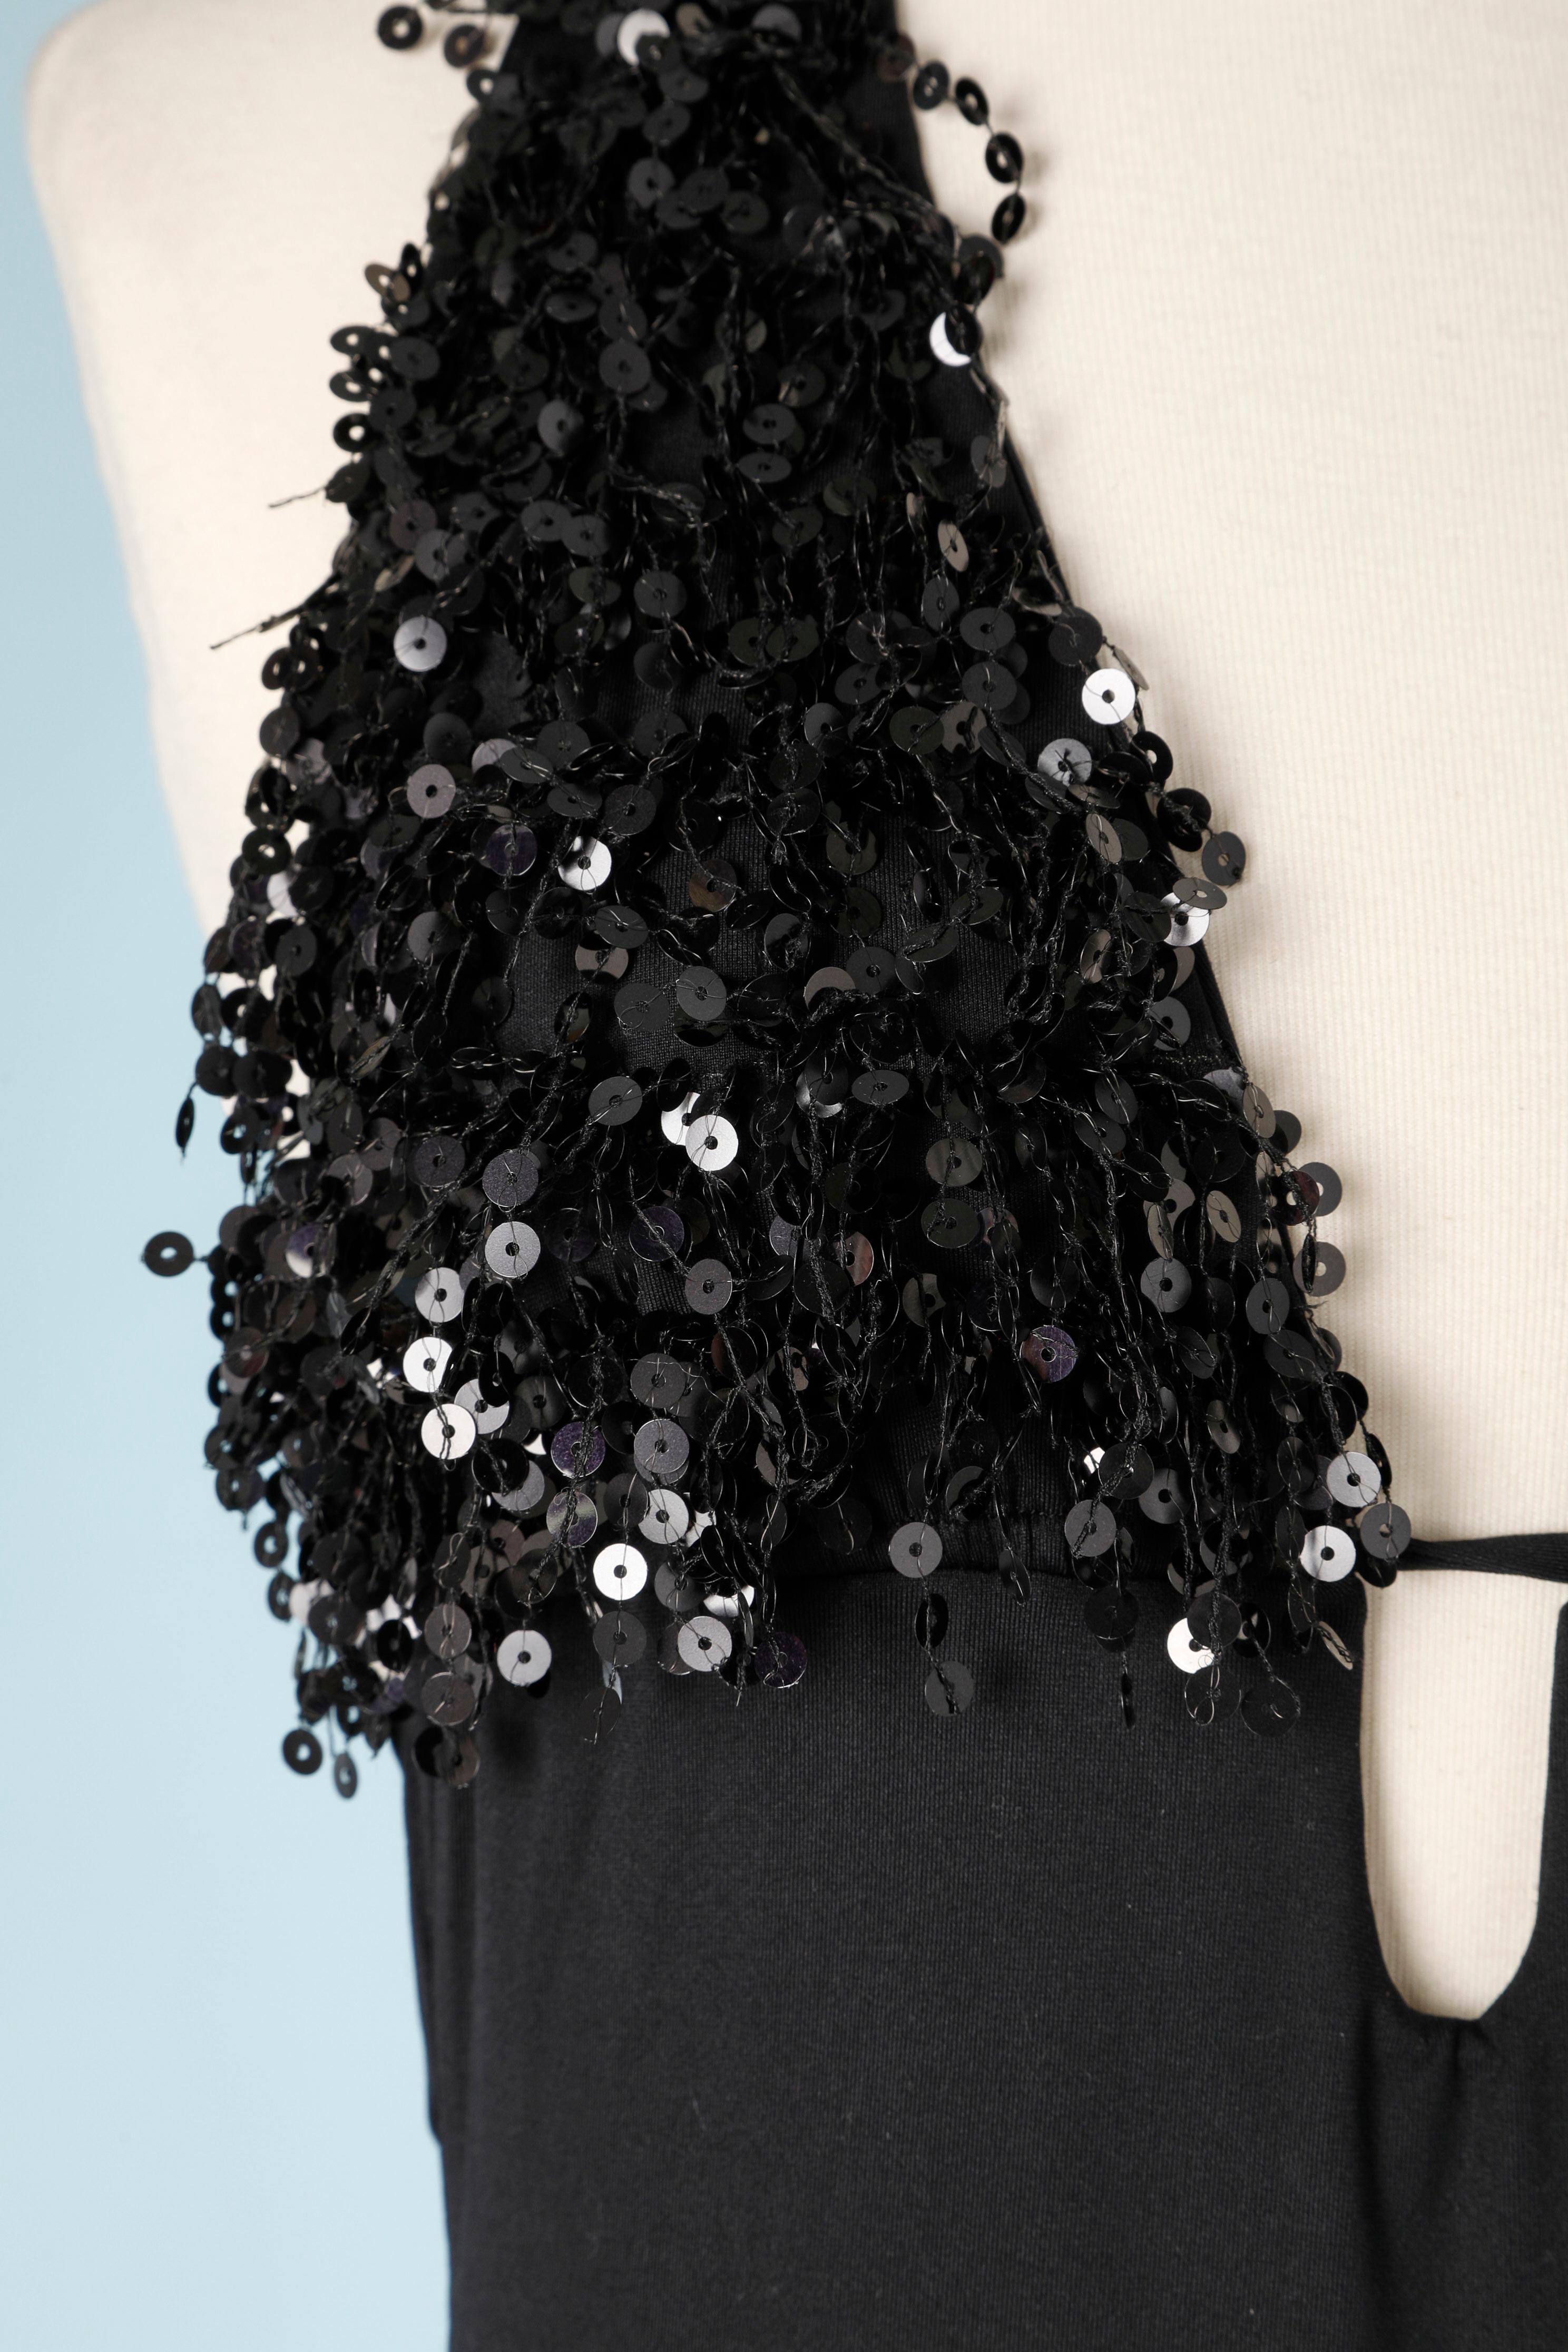 Schwarzes rückenfreies Kleid mit Paillettenfransen an der Büste. Zusammensetzung des Hauptmaterials: 86% Polyamid, 14% Elastan. 
SIZE L auf dem Etikett, passt aber M 